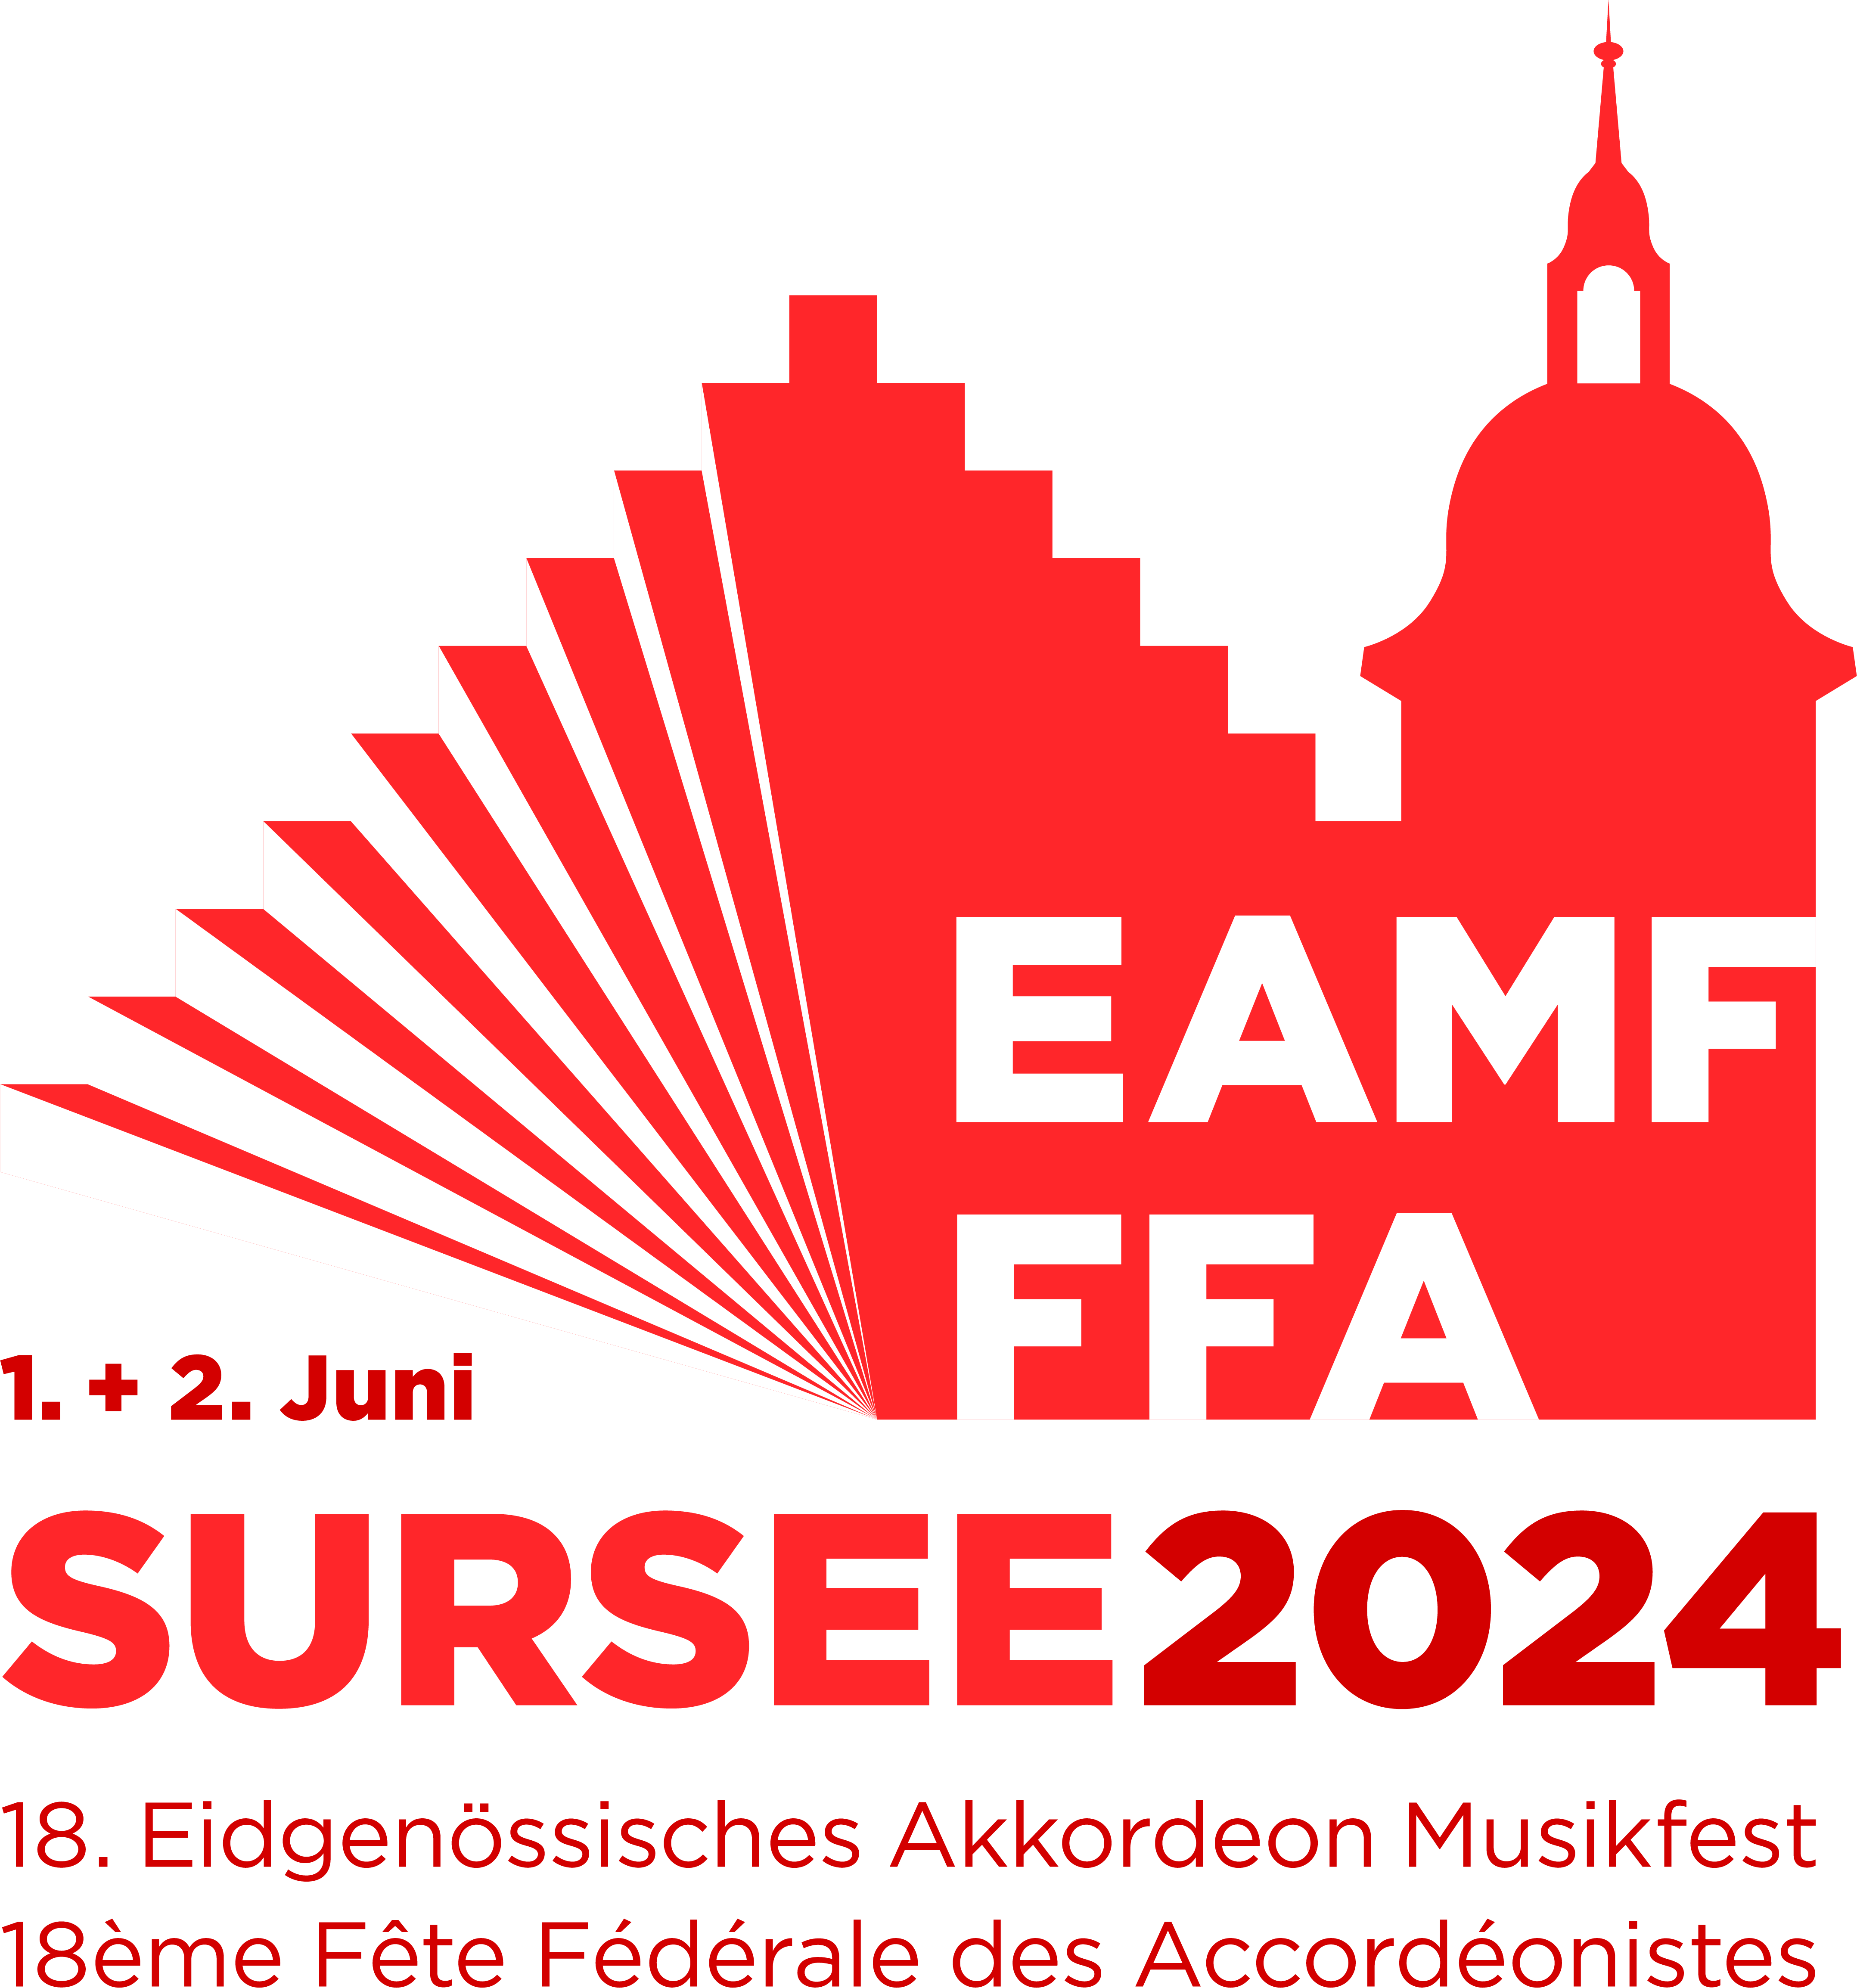 EAMF FFA Sursee 2024